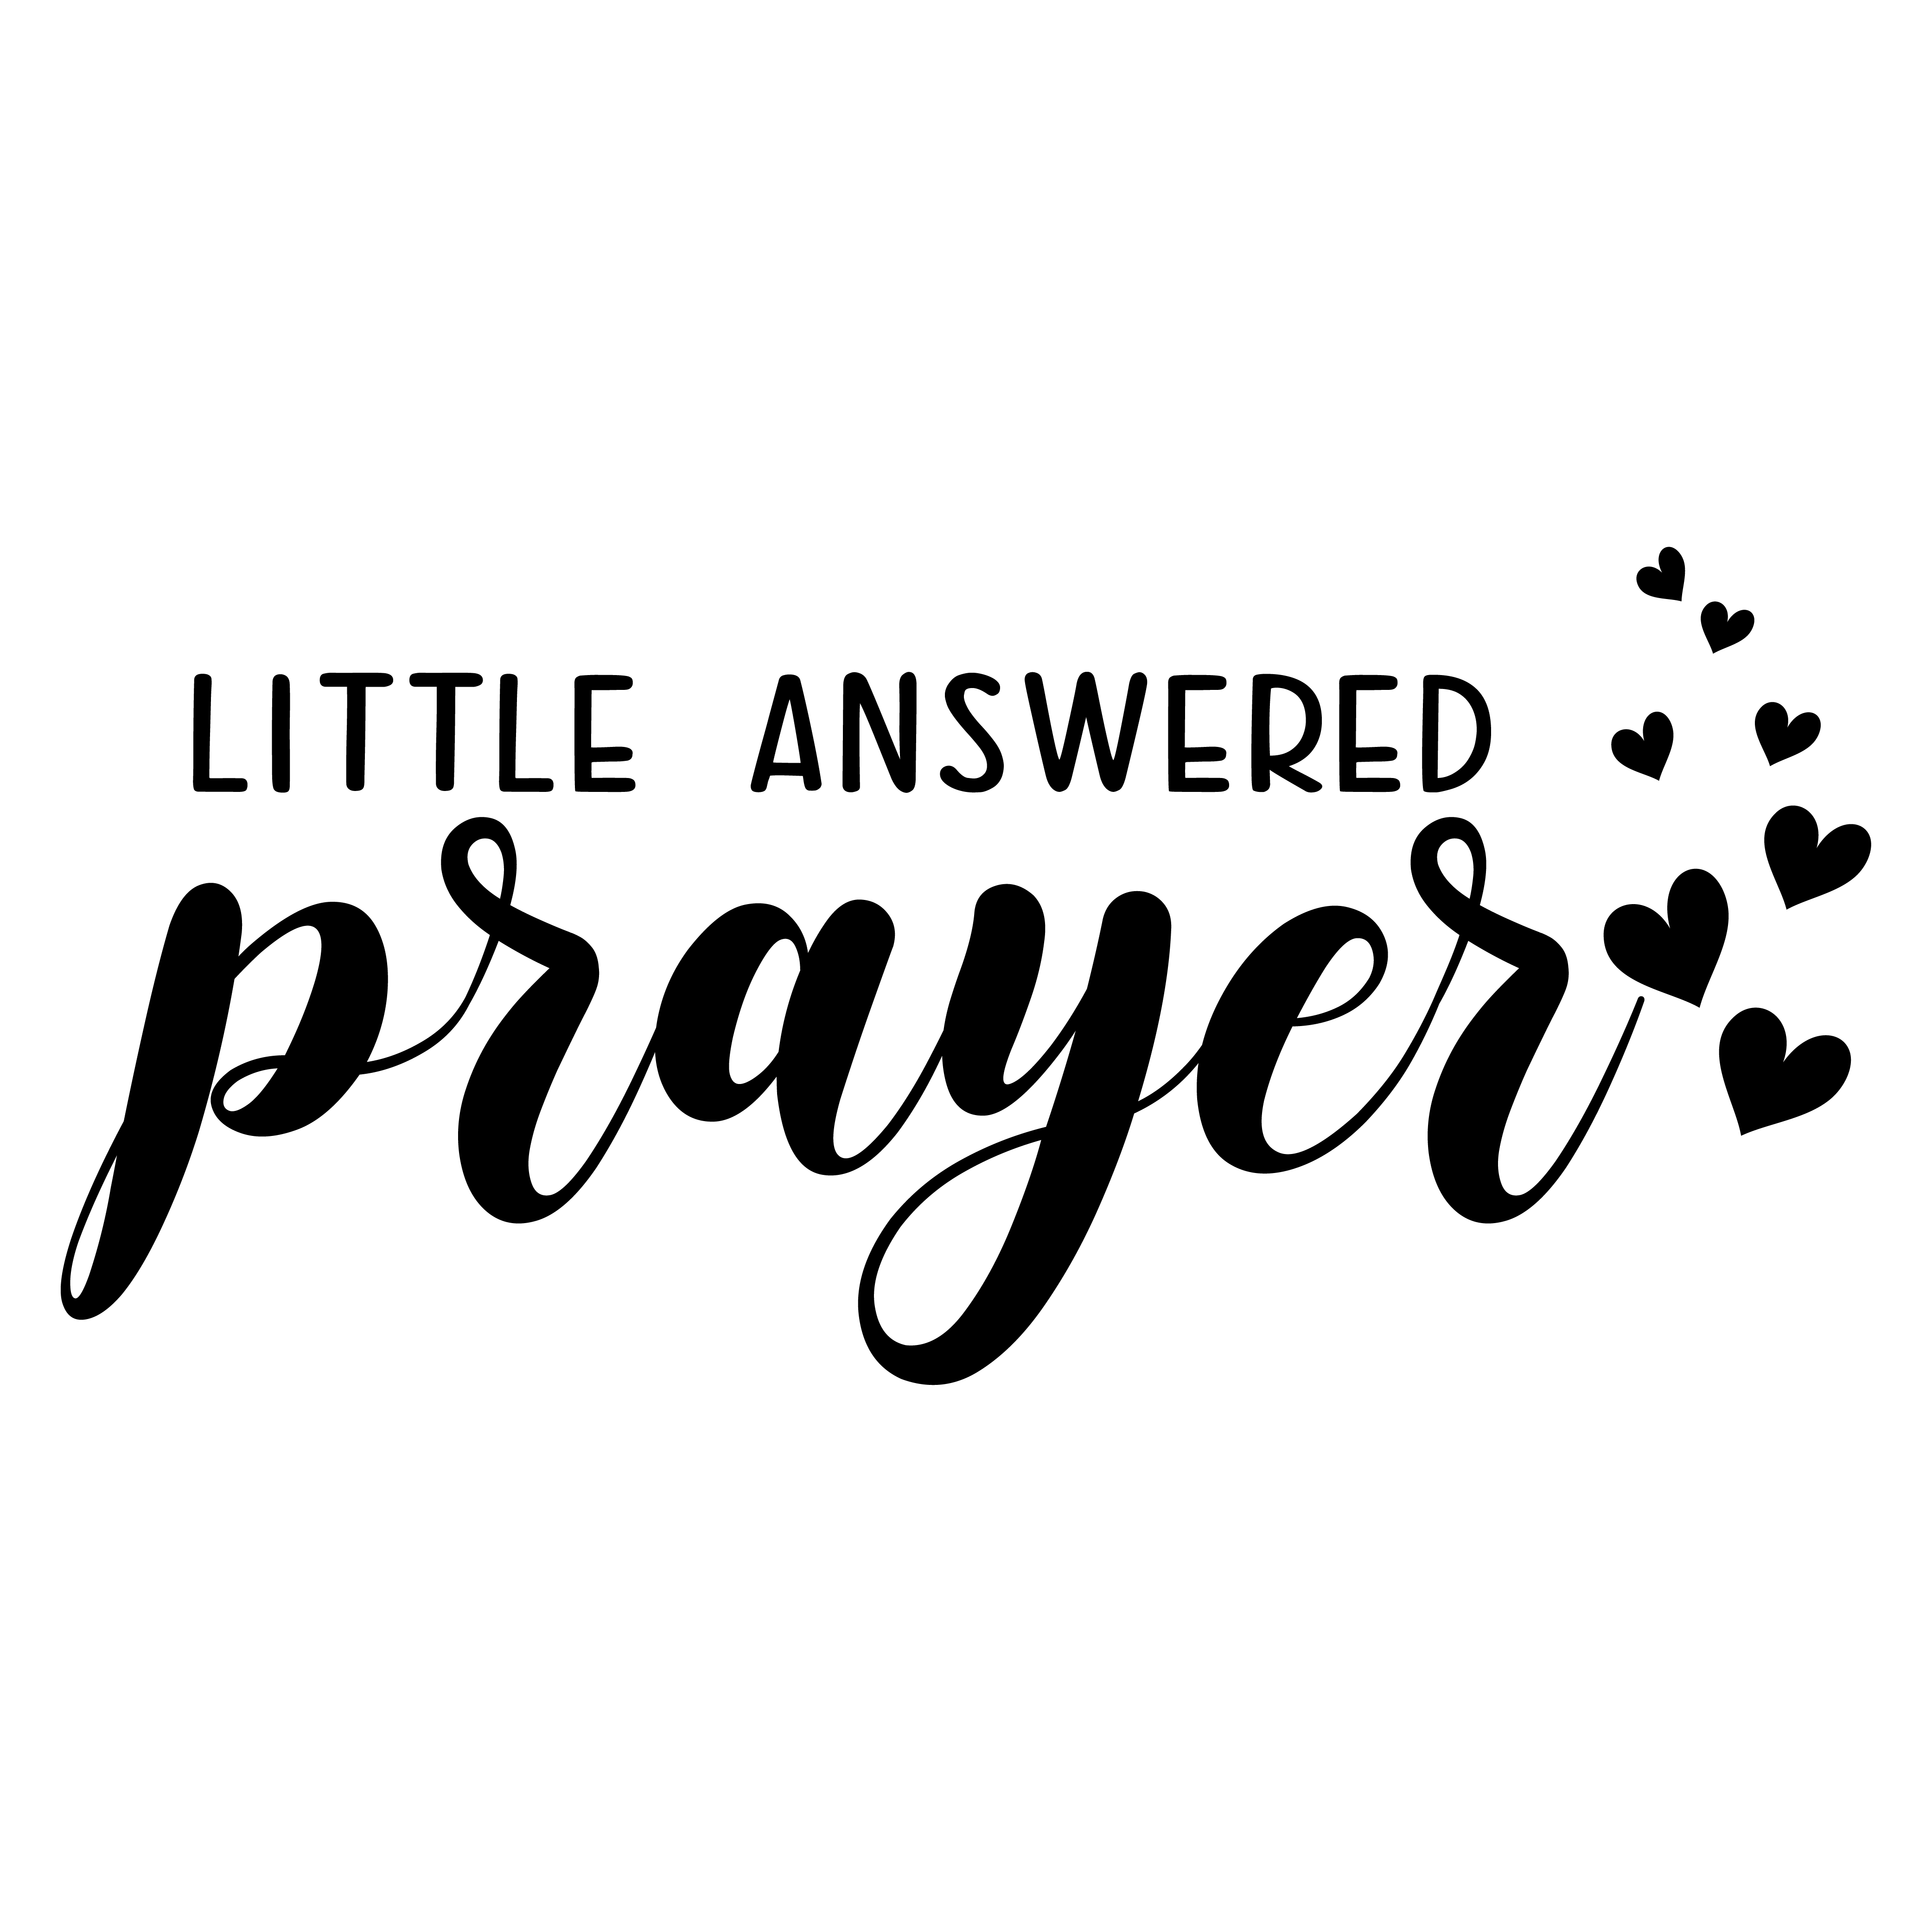 Little Answered Prayer Onesie